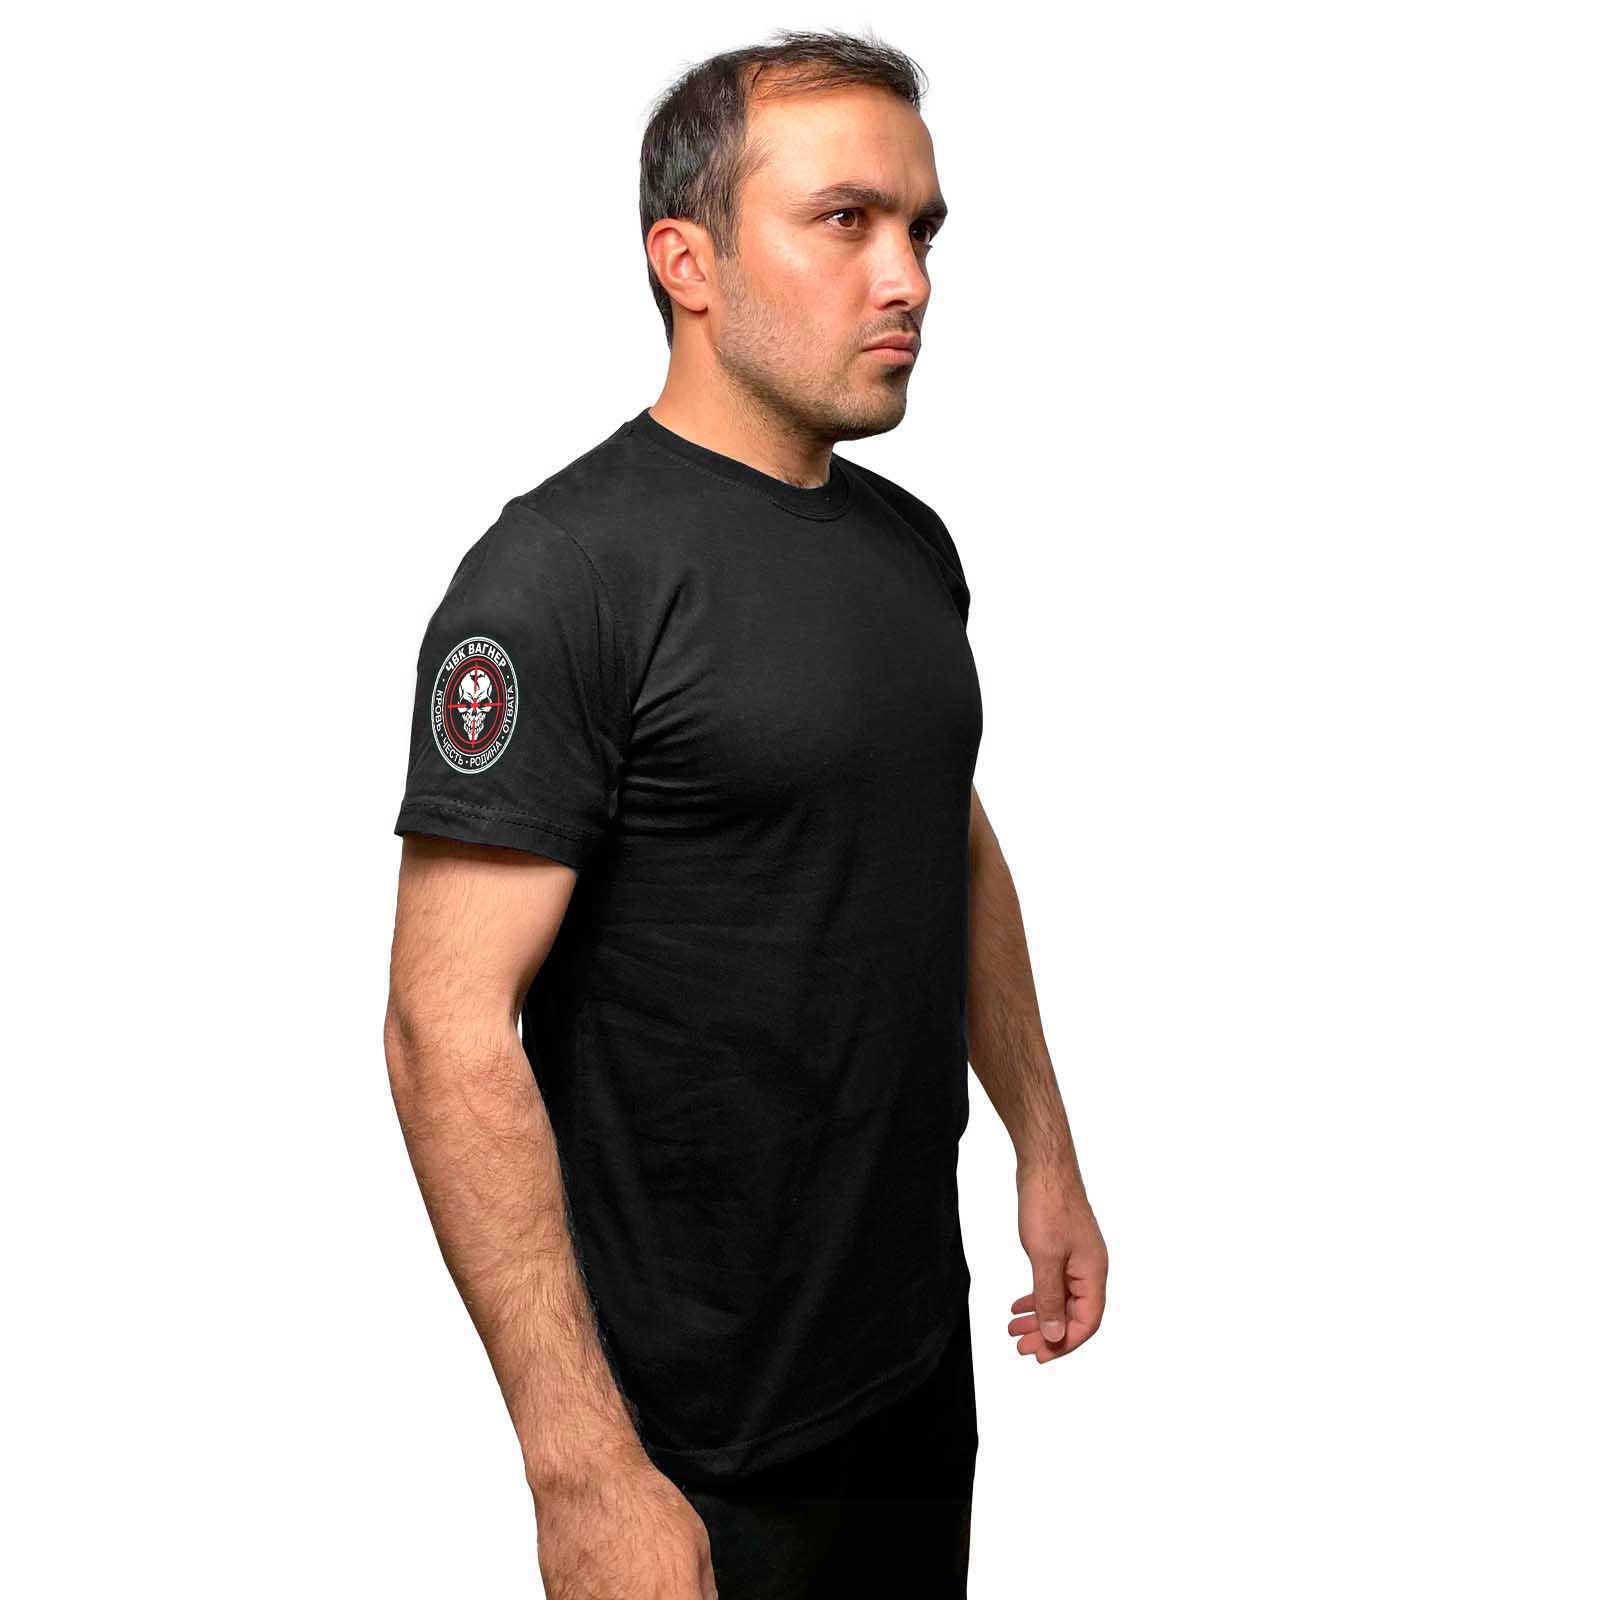 Купить трикотажную мужскую футболку с термотрансфером ЧВК Вагнер онлайн